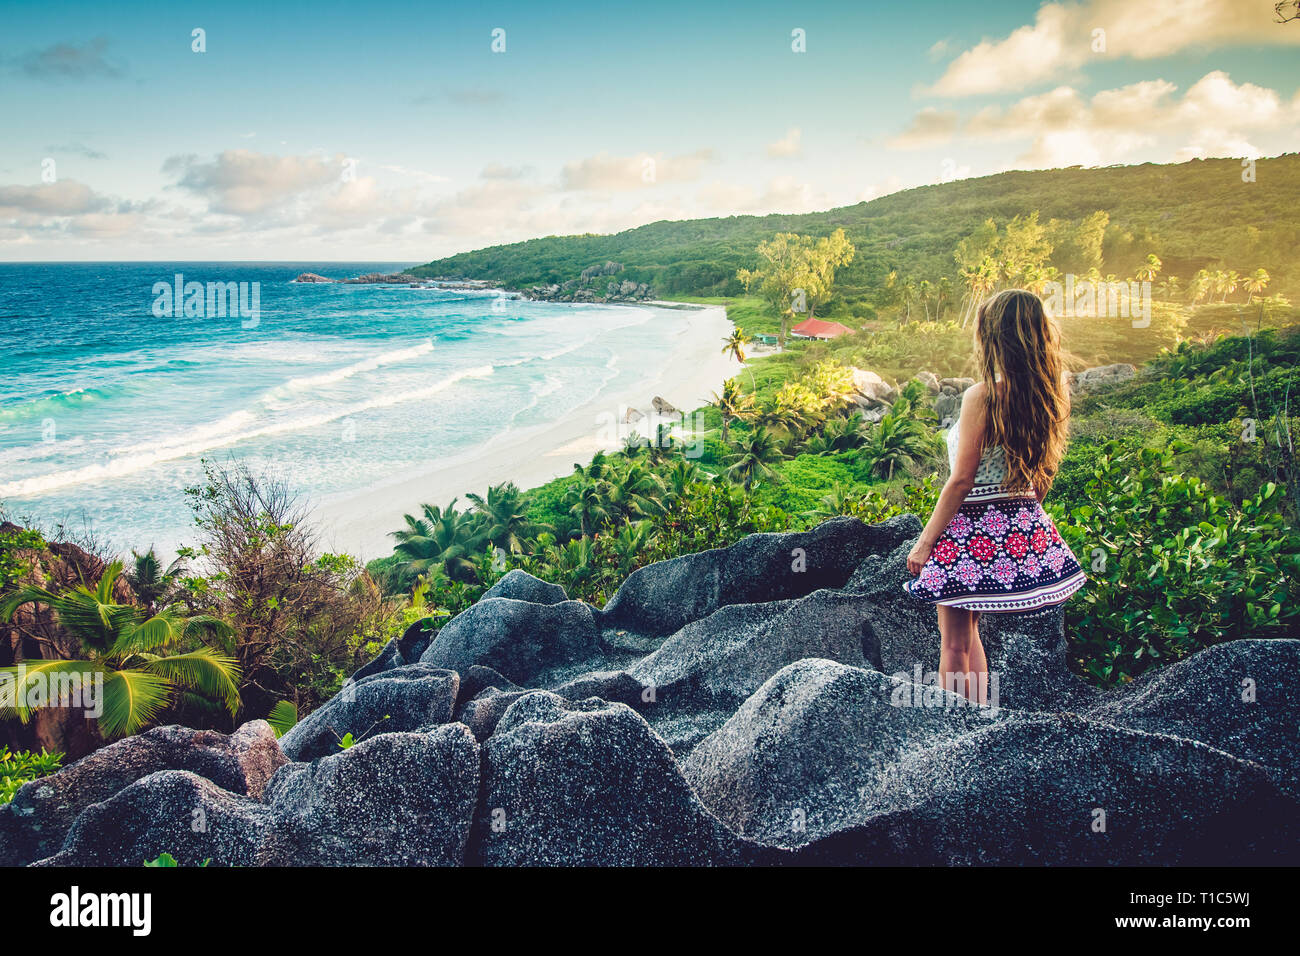 Una chica joven admira la vista en Grande Anse Beach ubicado en la isla de La Digue, Seychelles Foto de stock